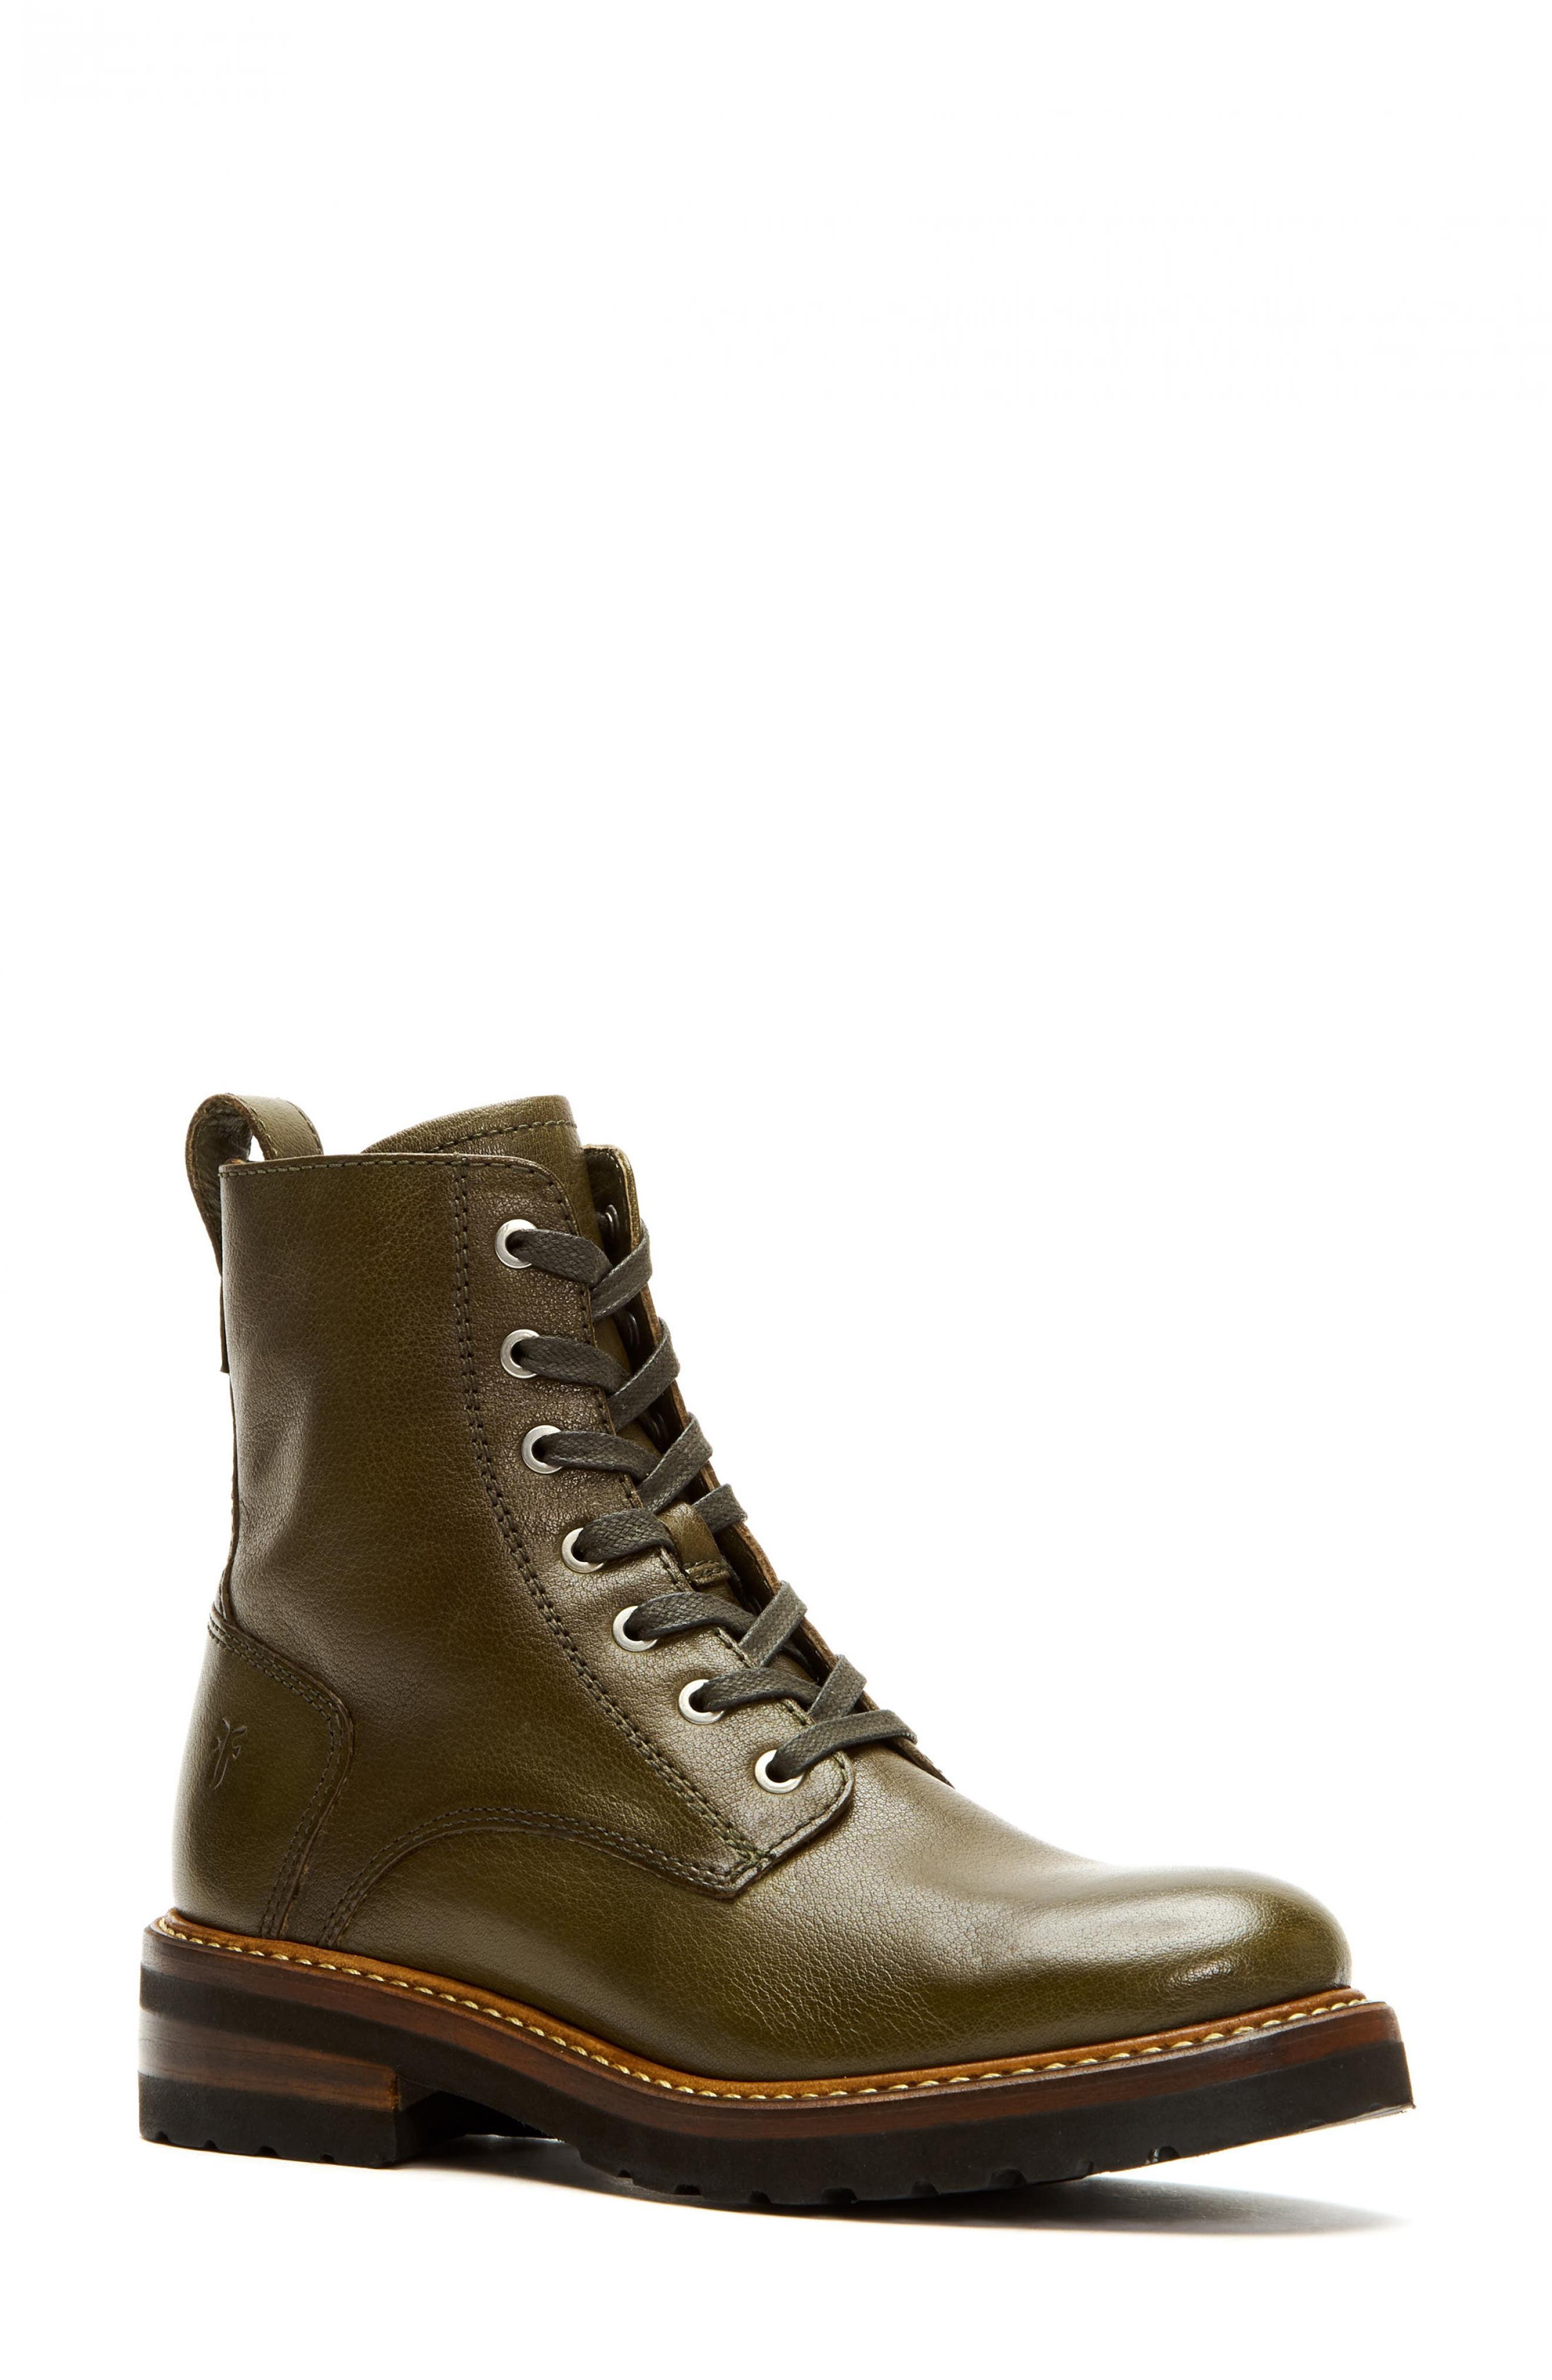 frye combat boots sale